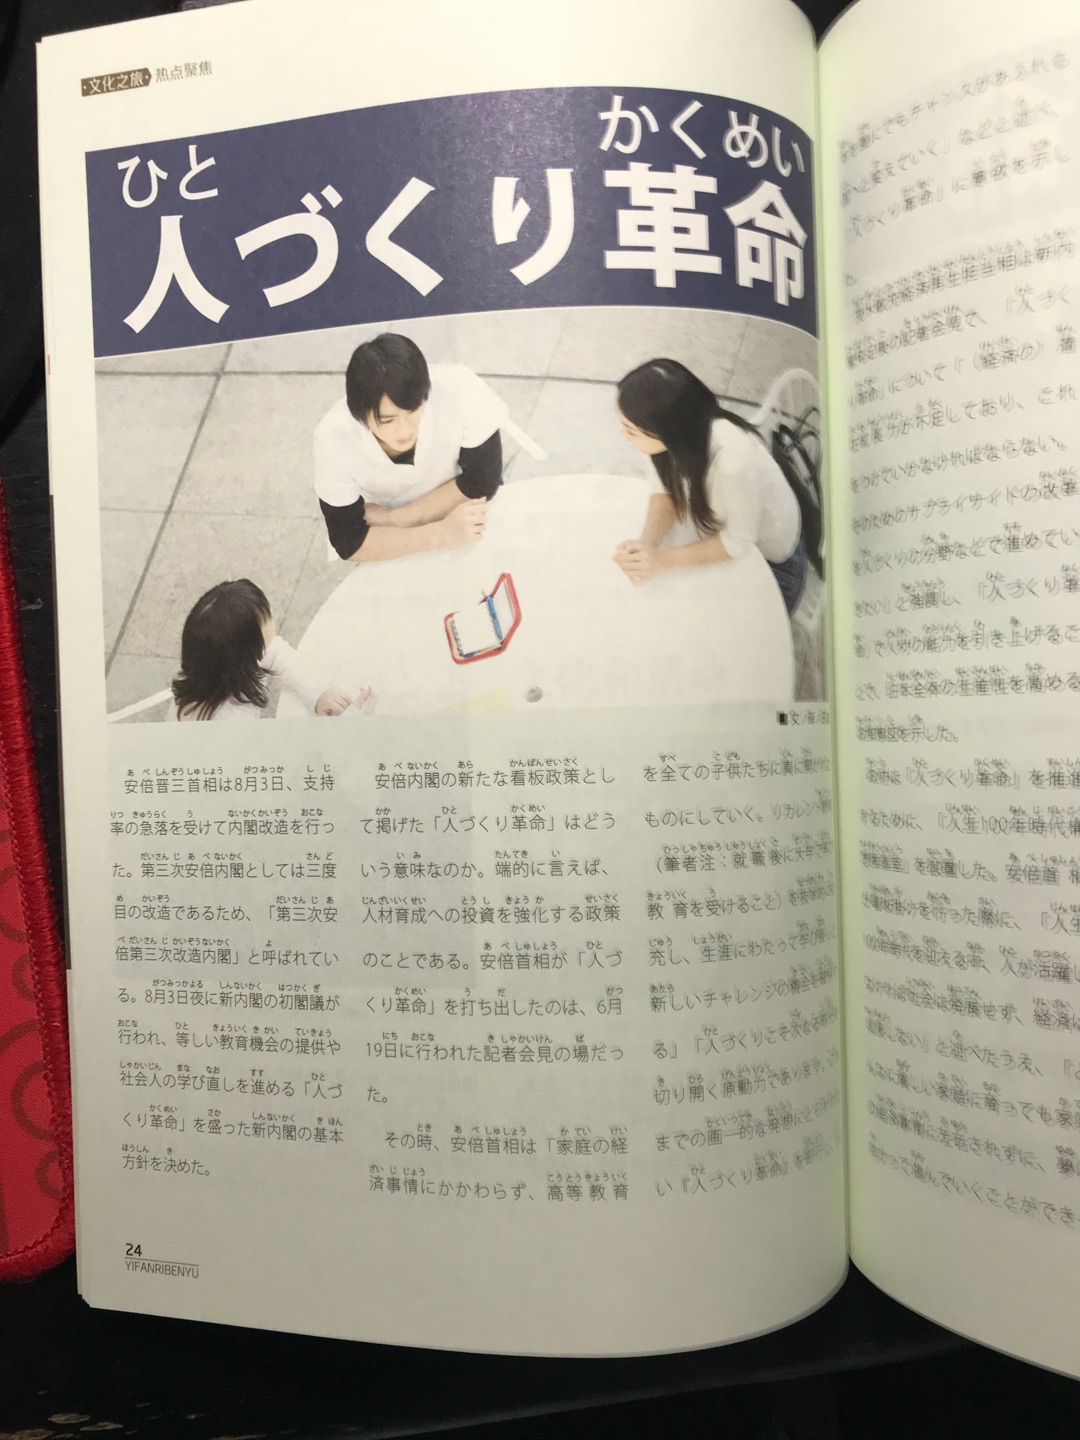 书不错，学日语必备，没有课本那么枯燥。有趣おもしろい